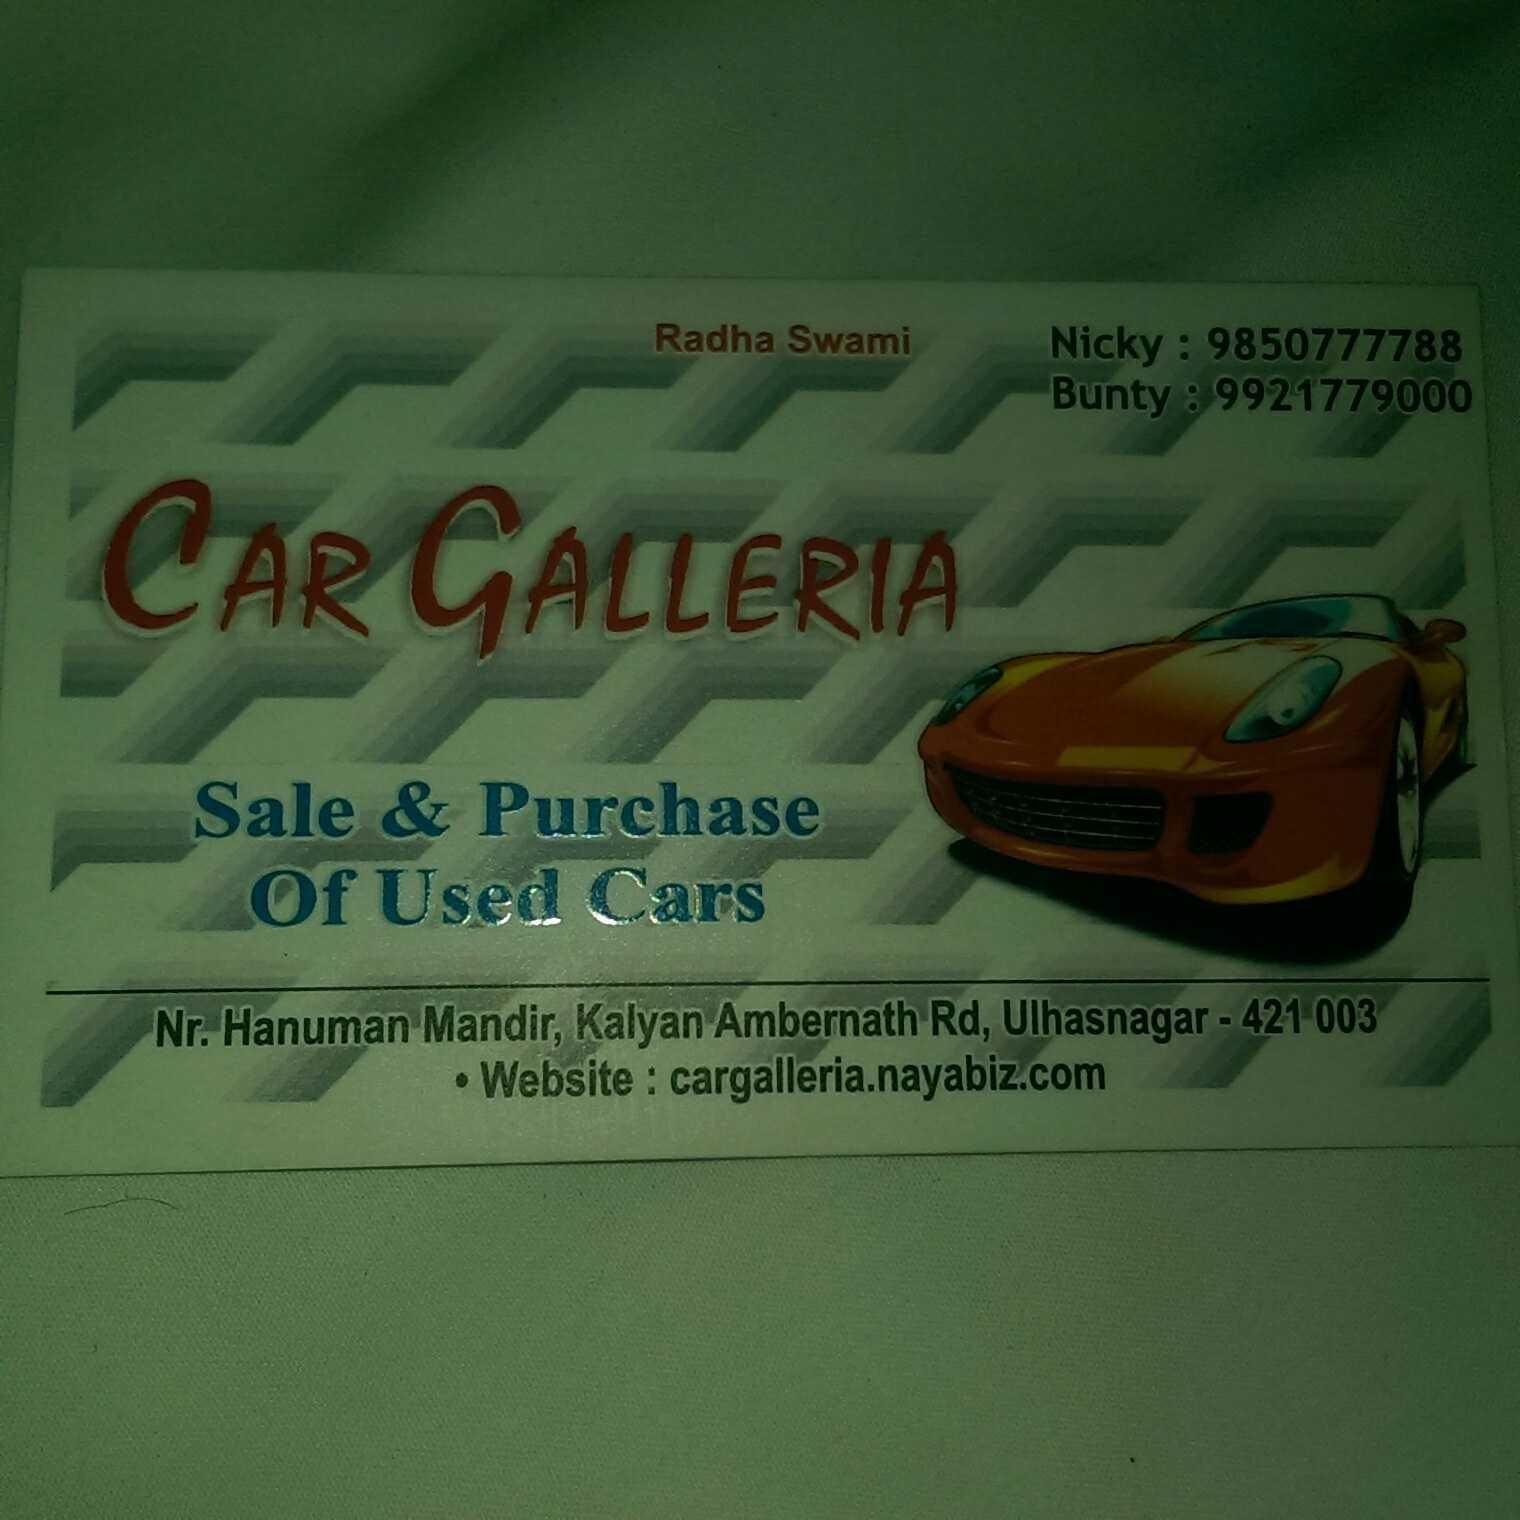 Car Galleria01